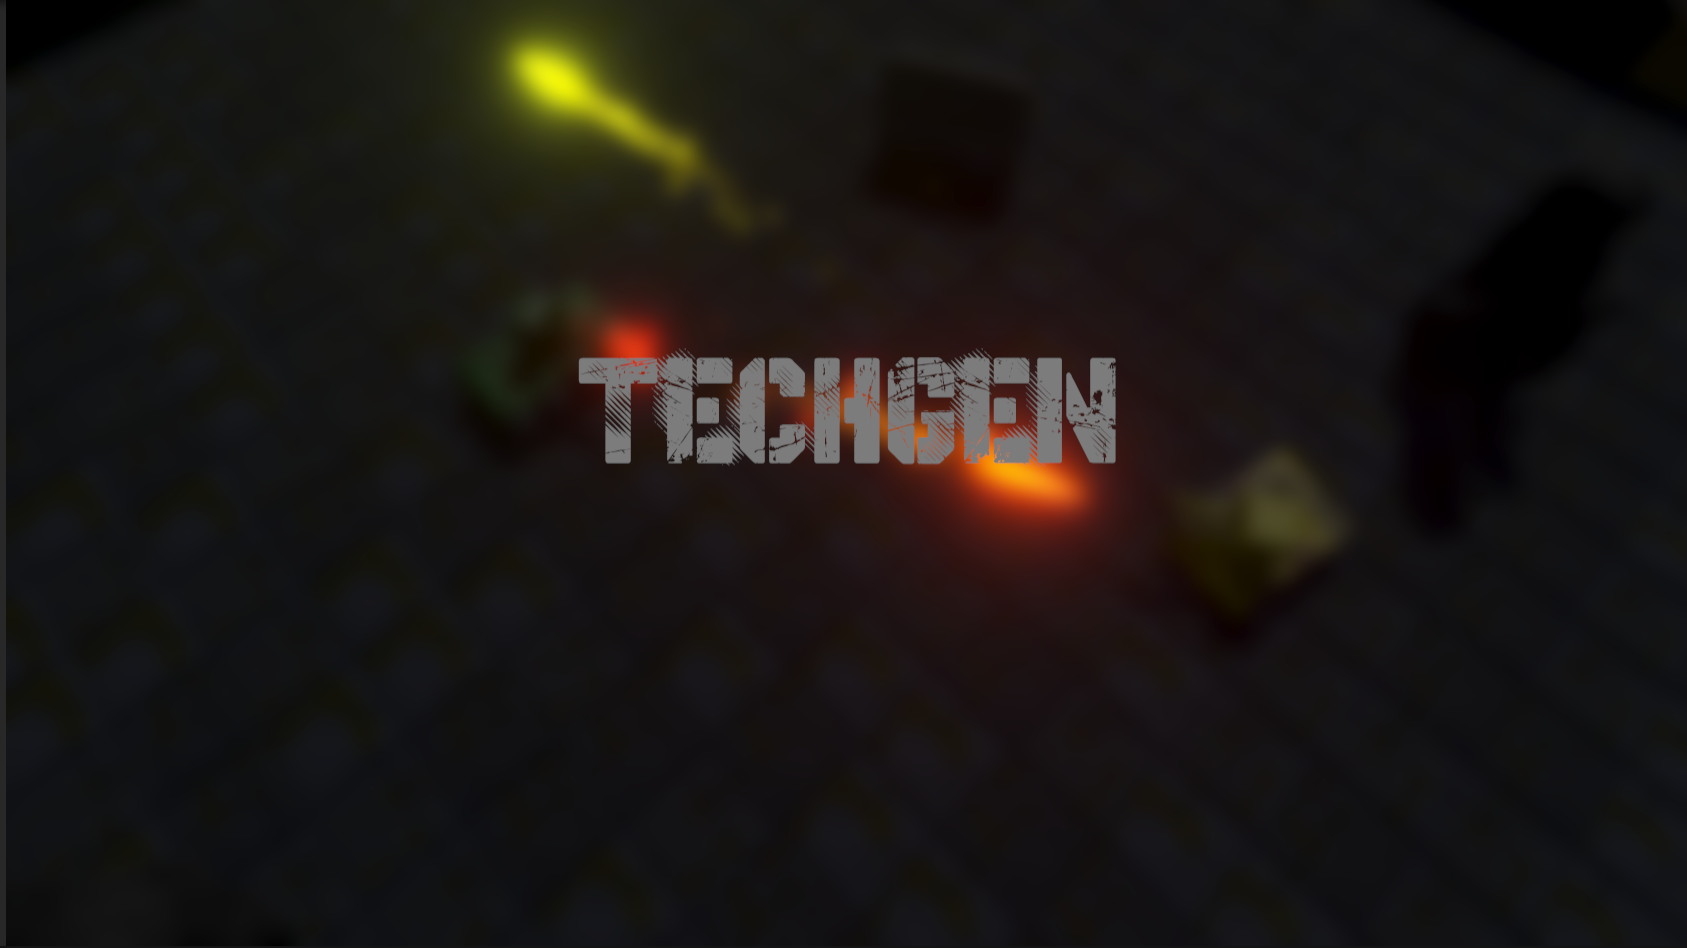 TechGen